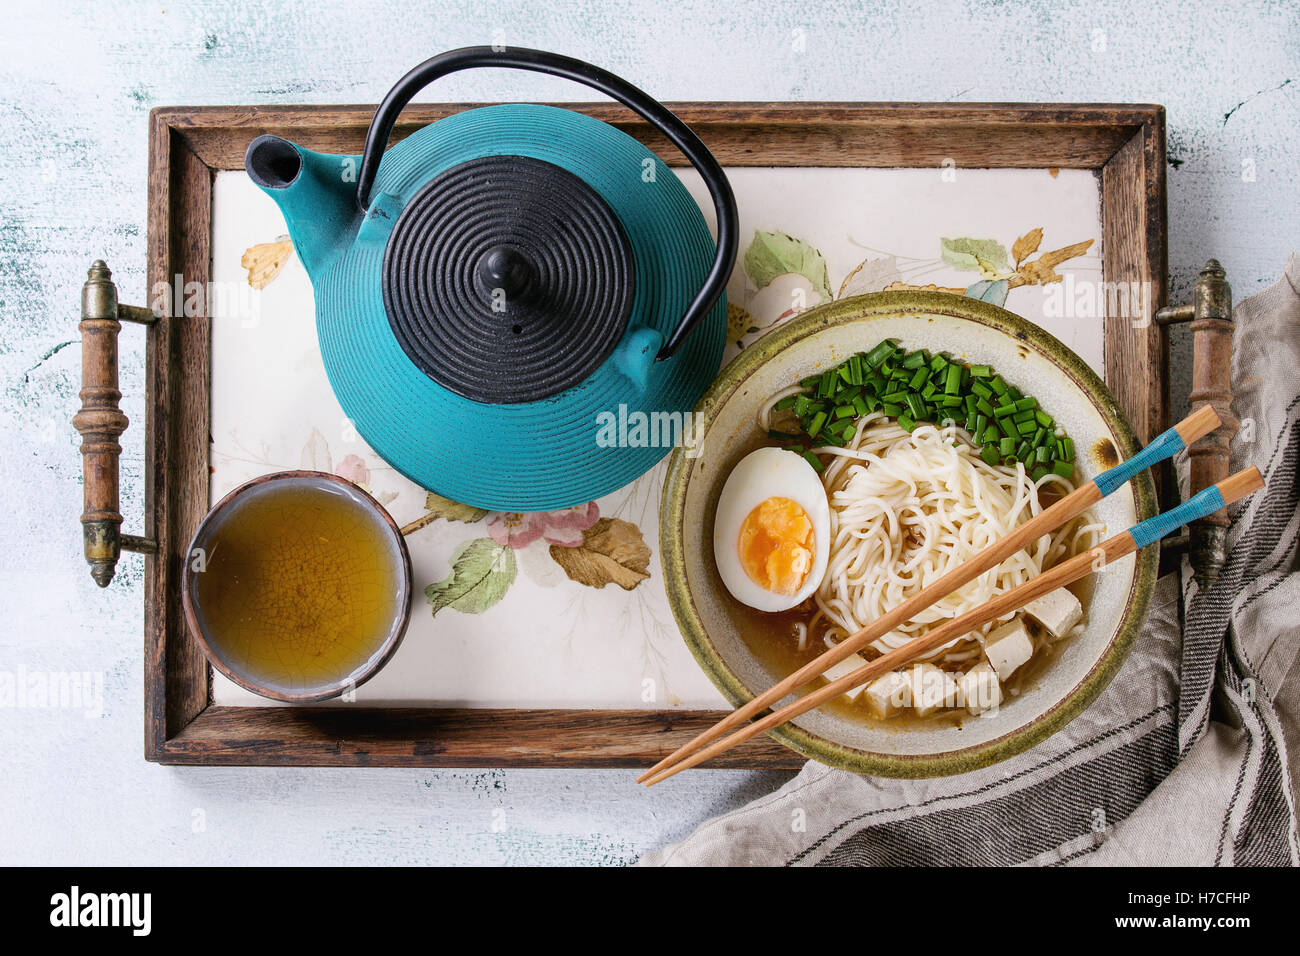 Asiatische Suppe mit Nudeln, Ei, Frühlingszwiebeln und Tofu-Käse, serviert mit Stäbchen, Teekanne und Tasse grüner Tee Stockfoto